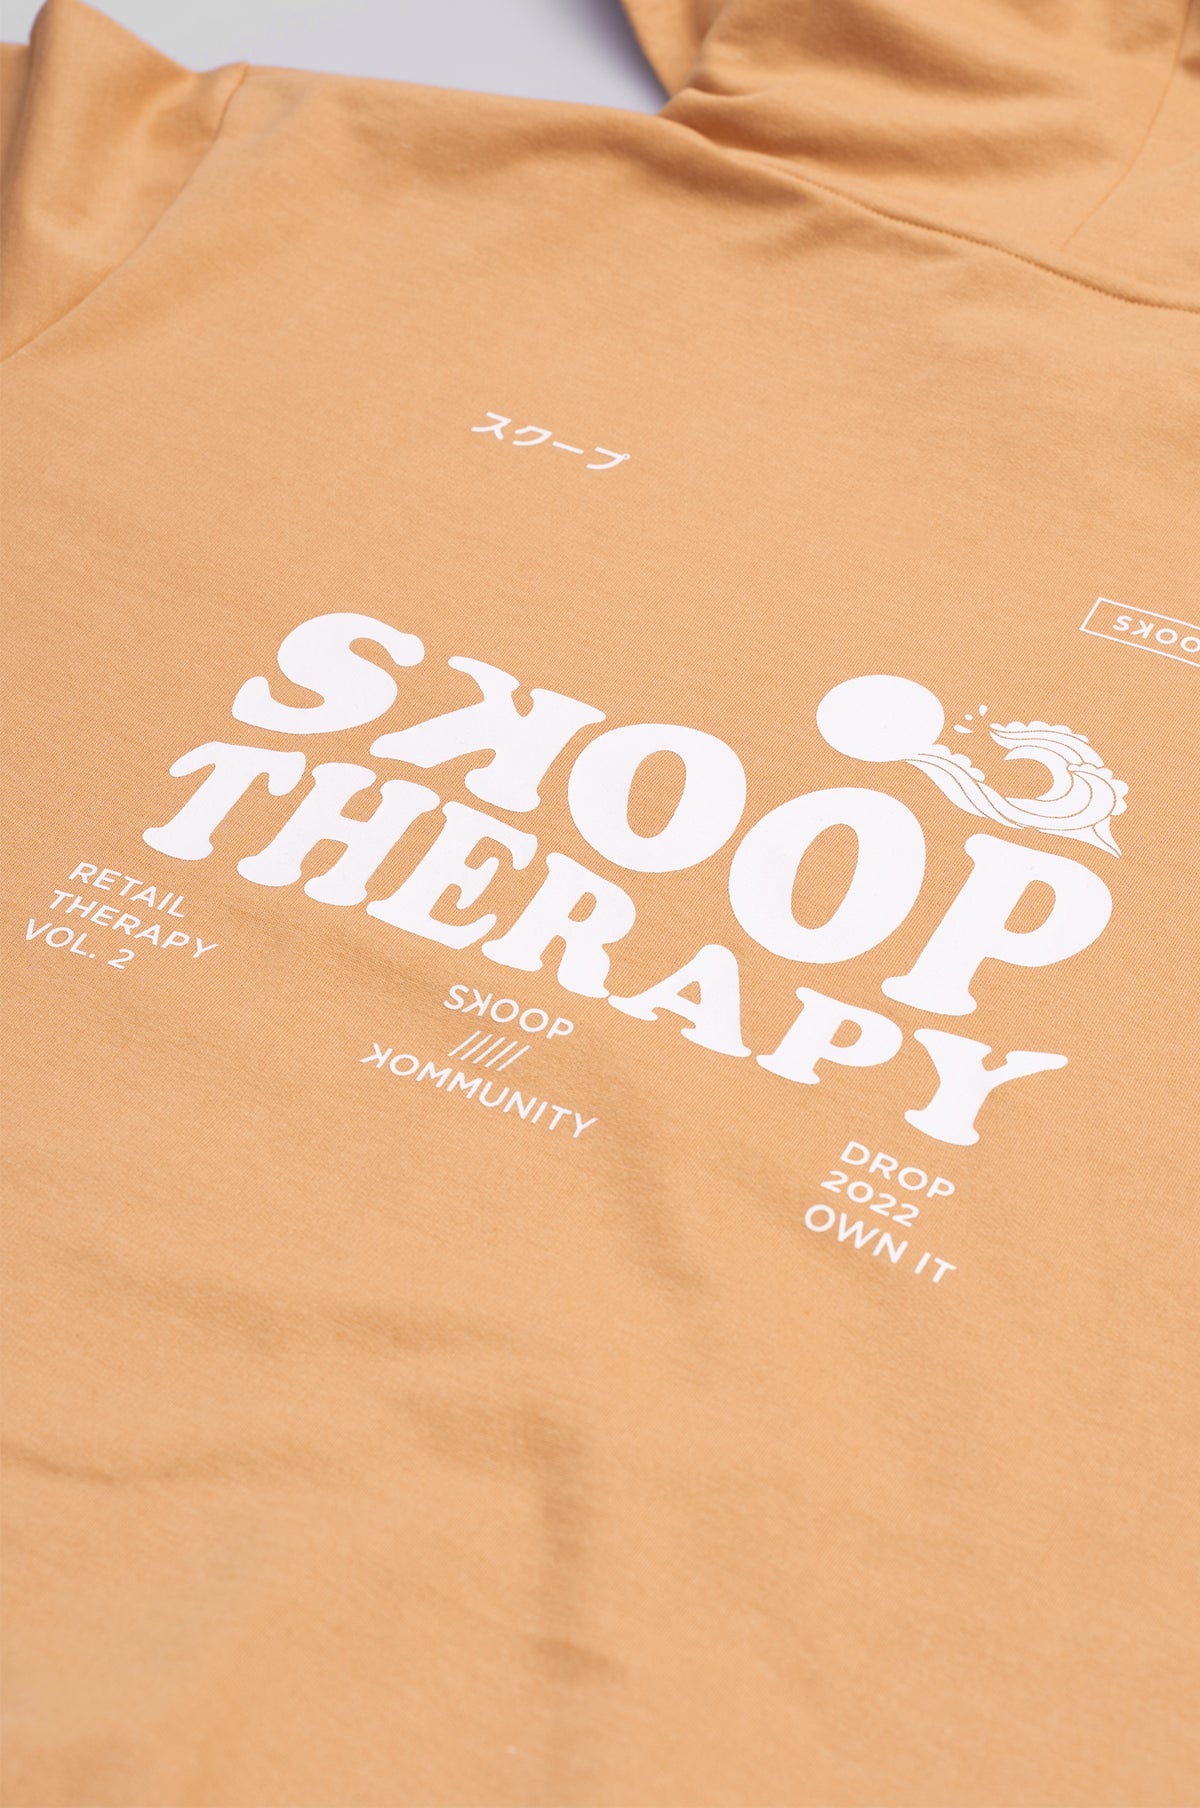 SKOOP®Therapy Hoodie - SKOOP Kommunity